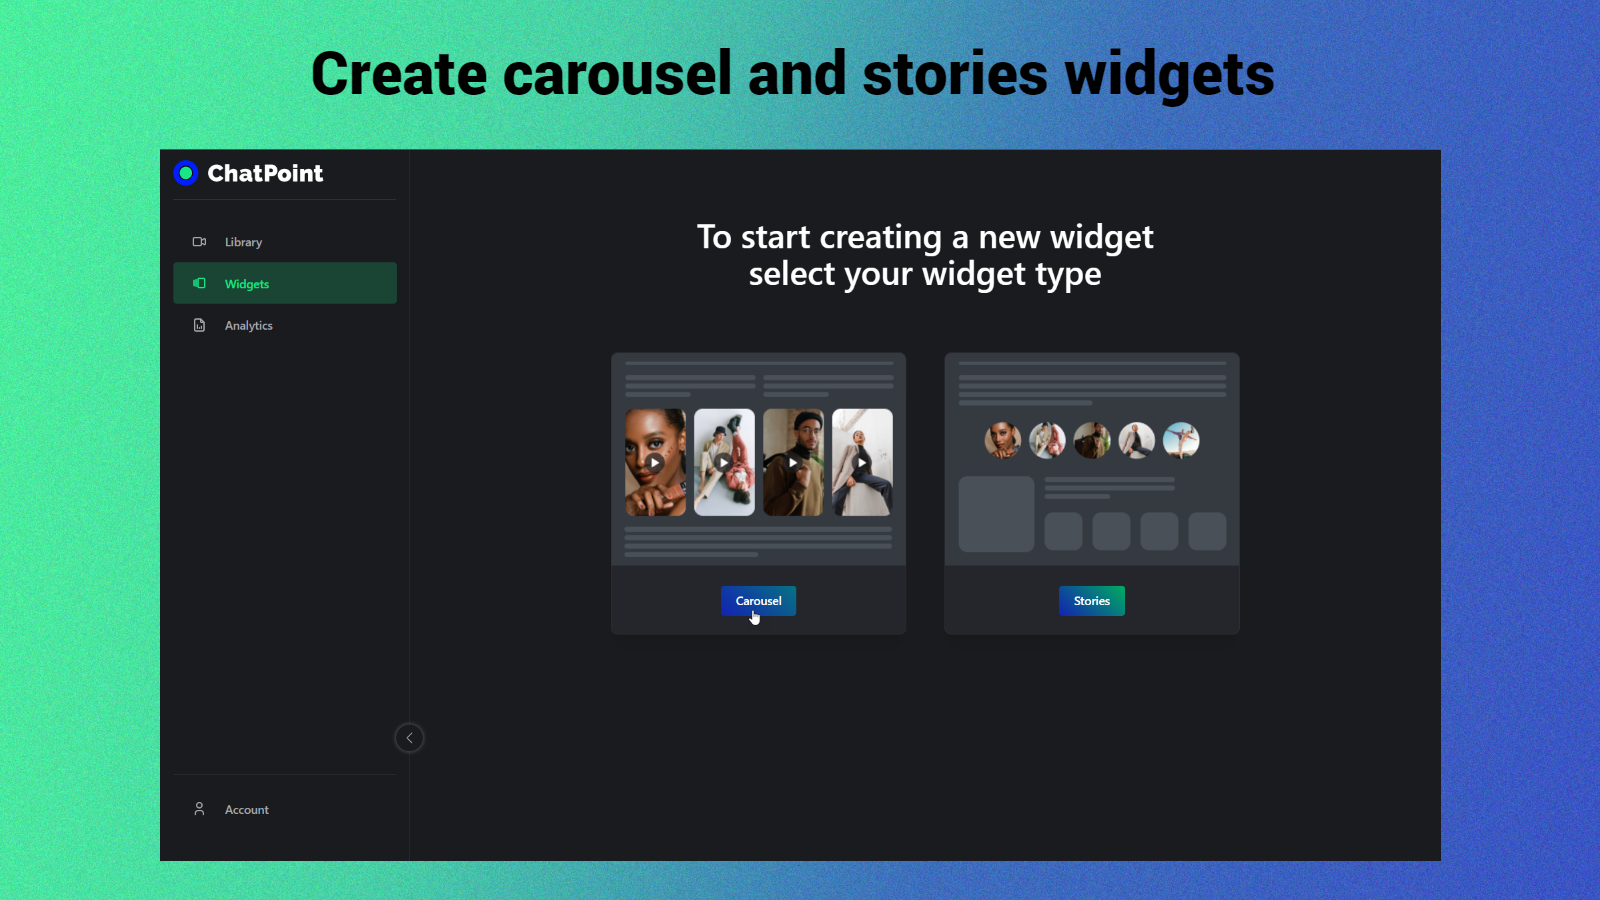 Adicione widgets de carrossel e histórias às suas páginas de início, produto e coleções